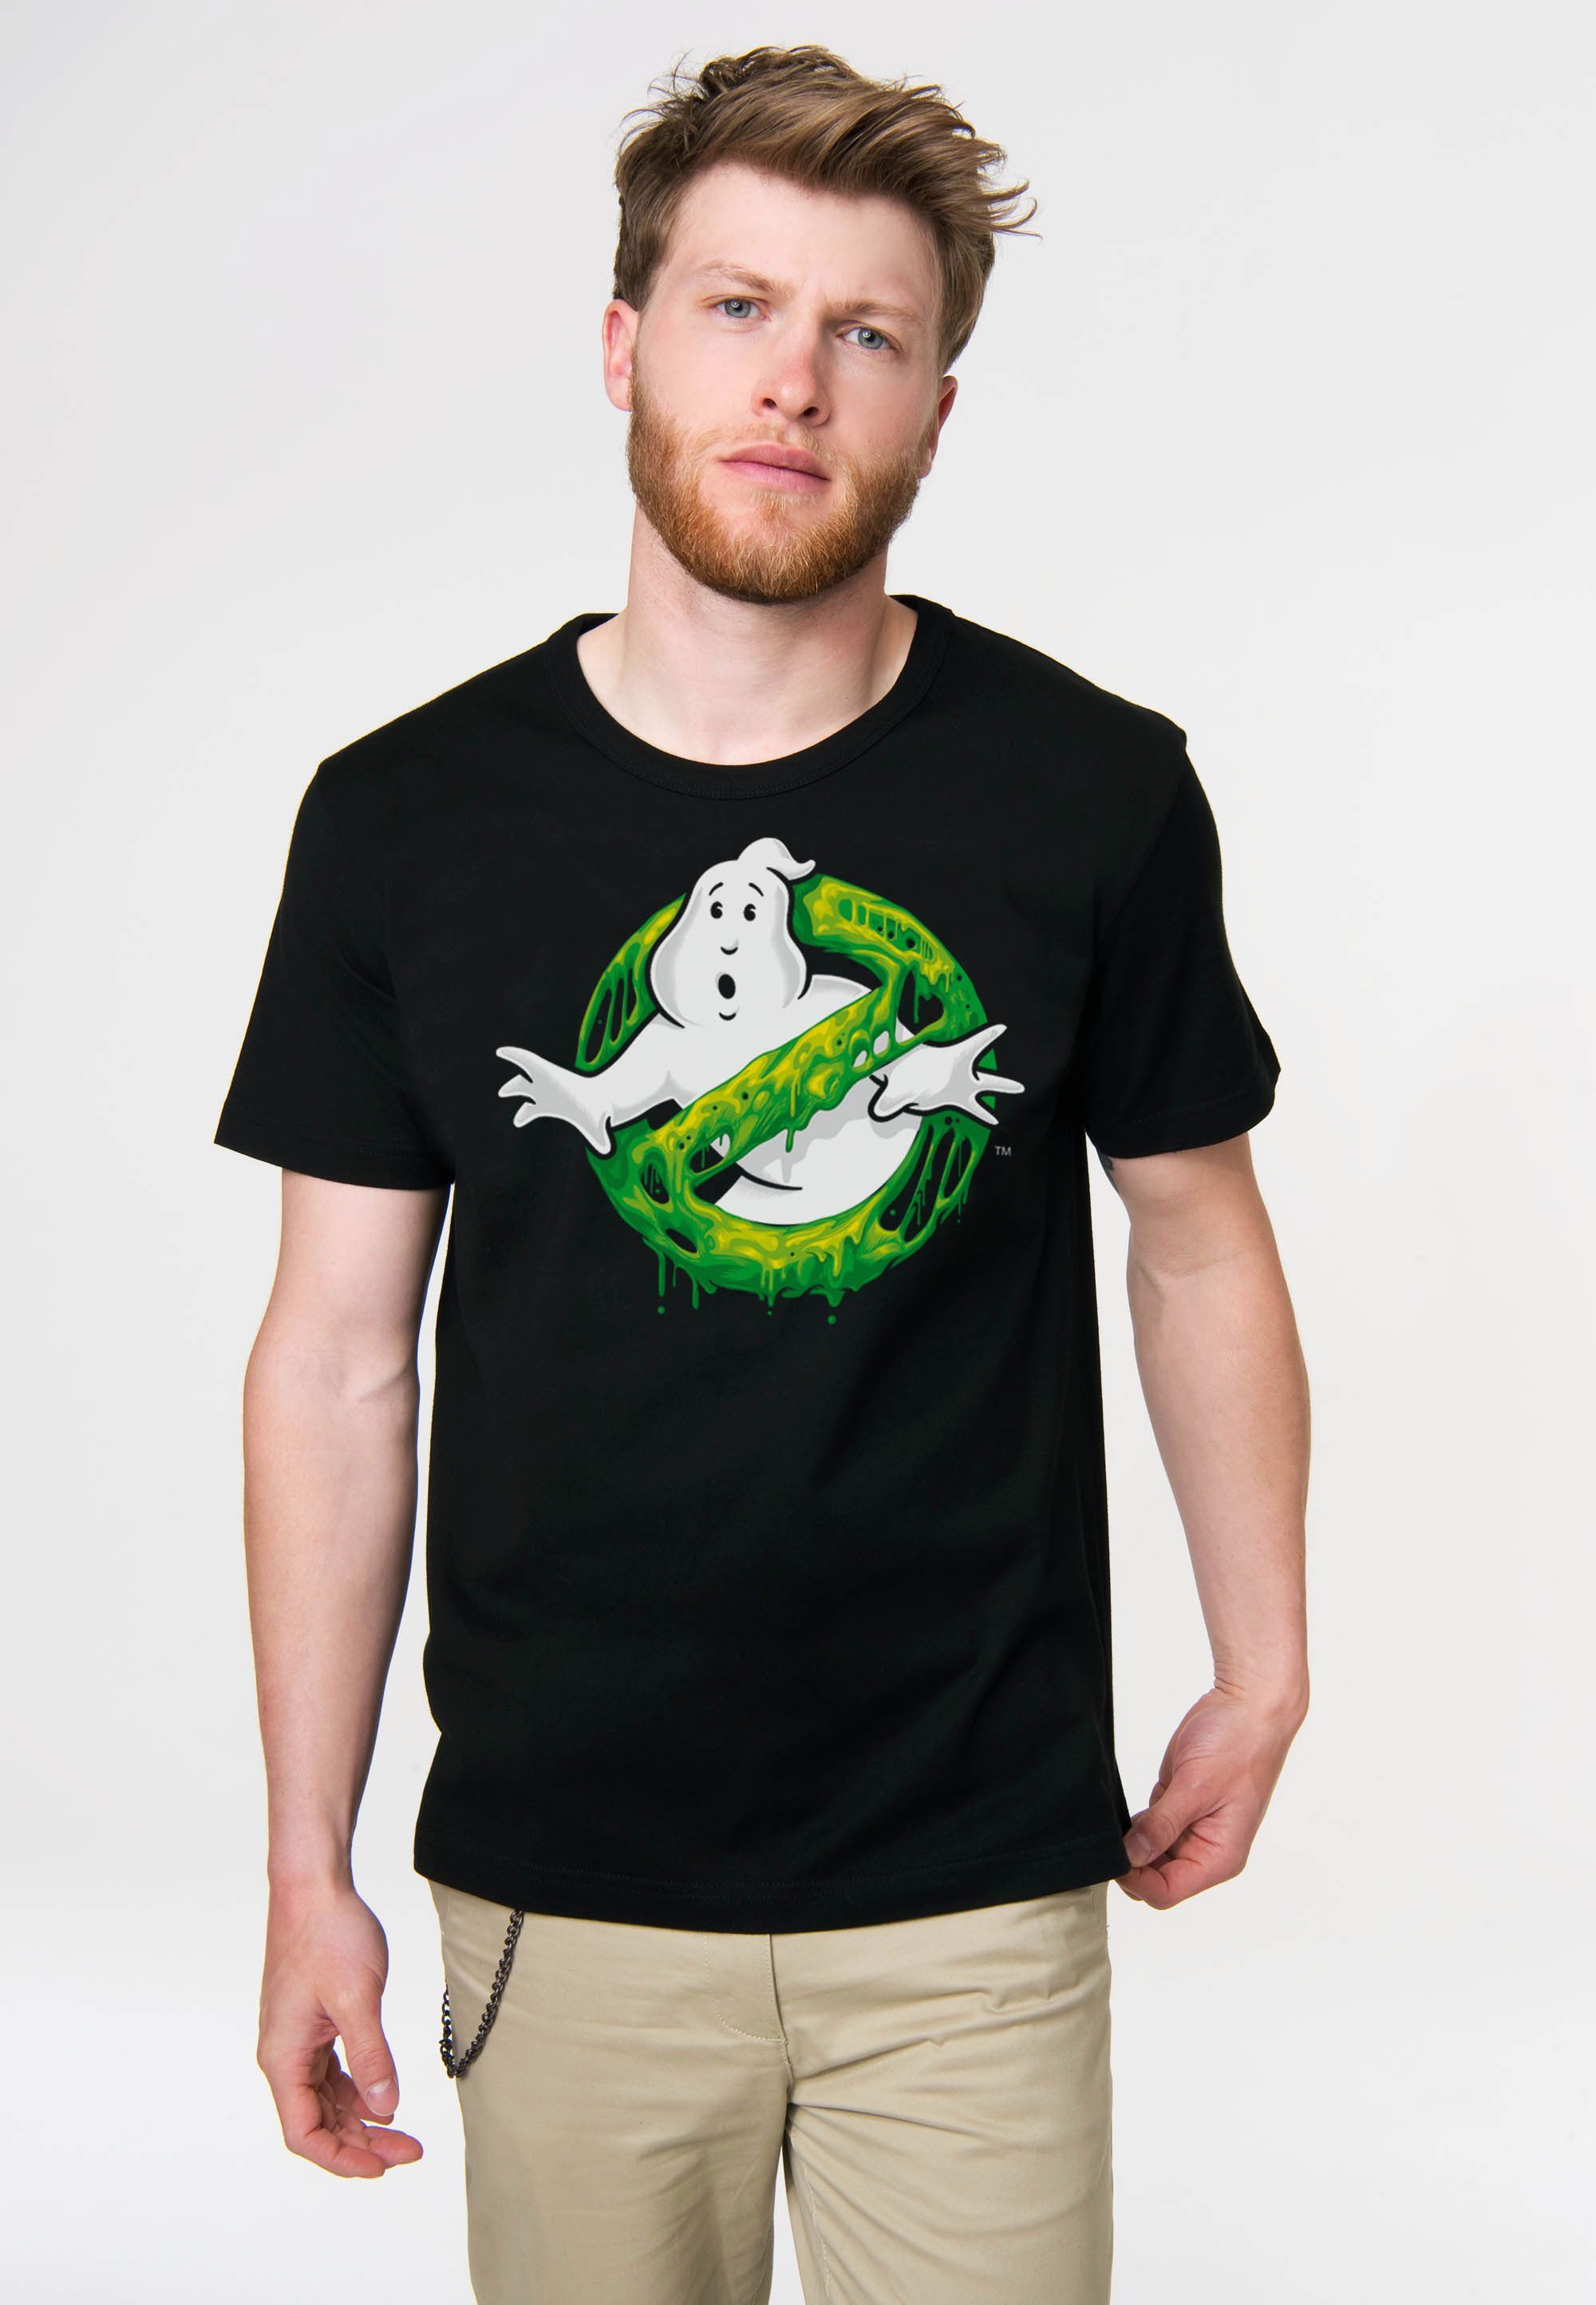 Einlaufvorbehandlung formstabi Ghostbusters nach T-Shirt auch mit Logo LOGOSHIRT vielen – Print, Slime coolem Wäschen Dank